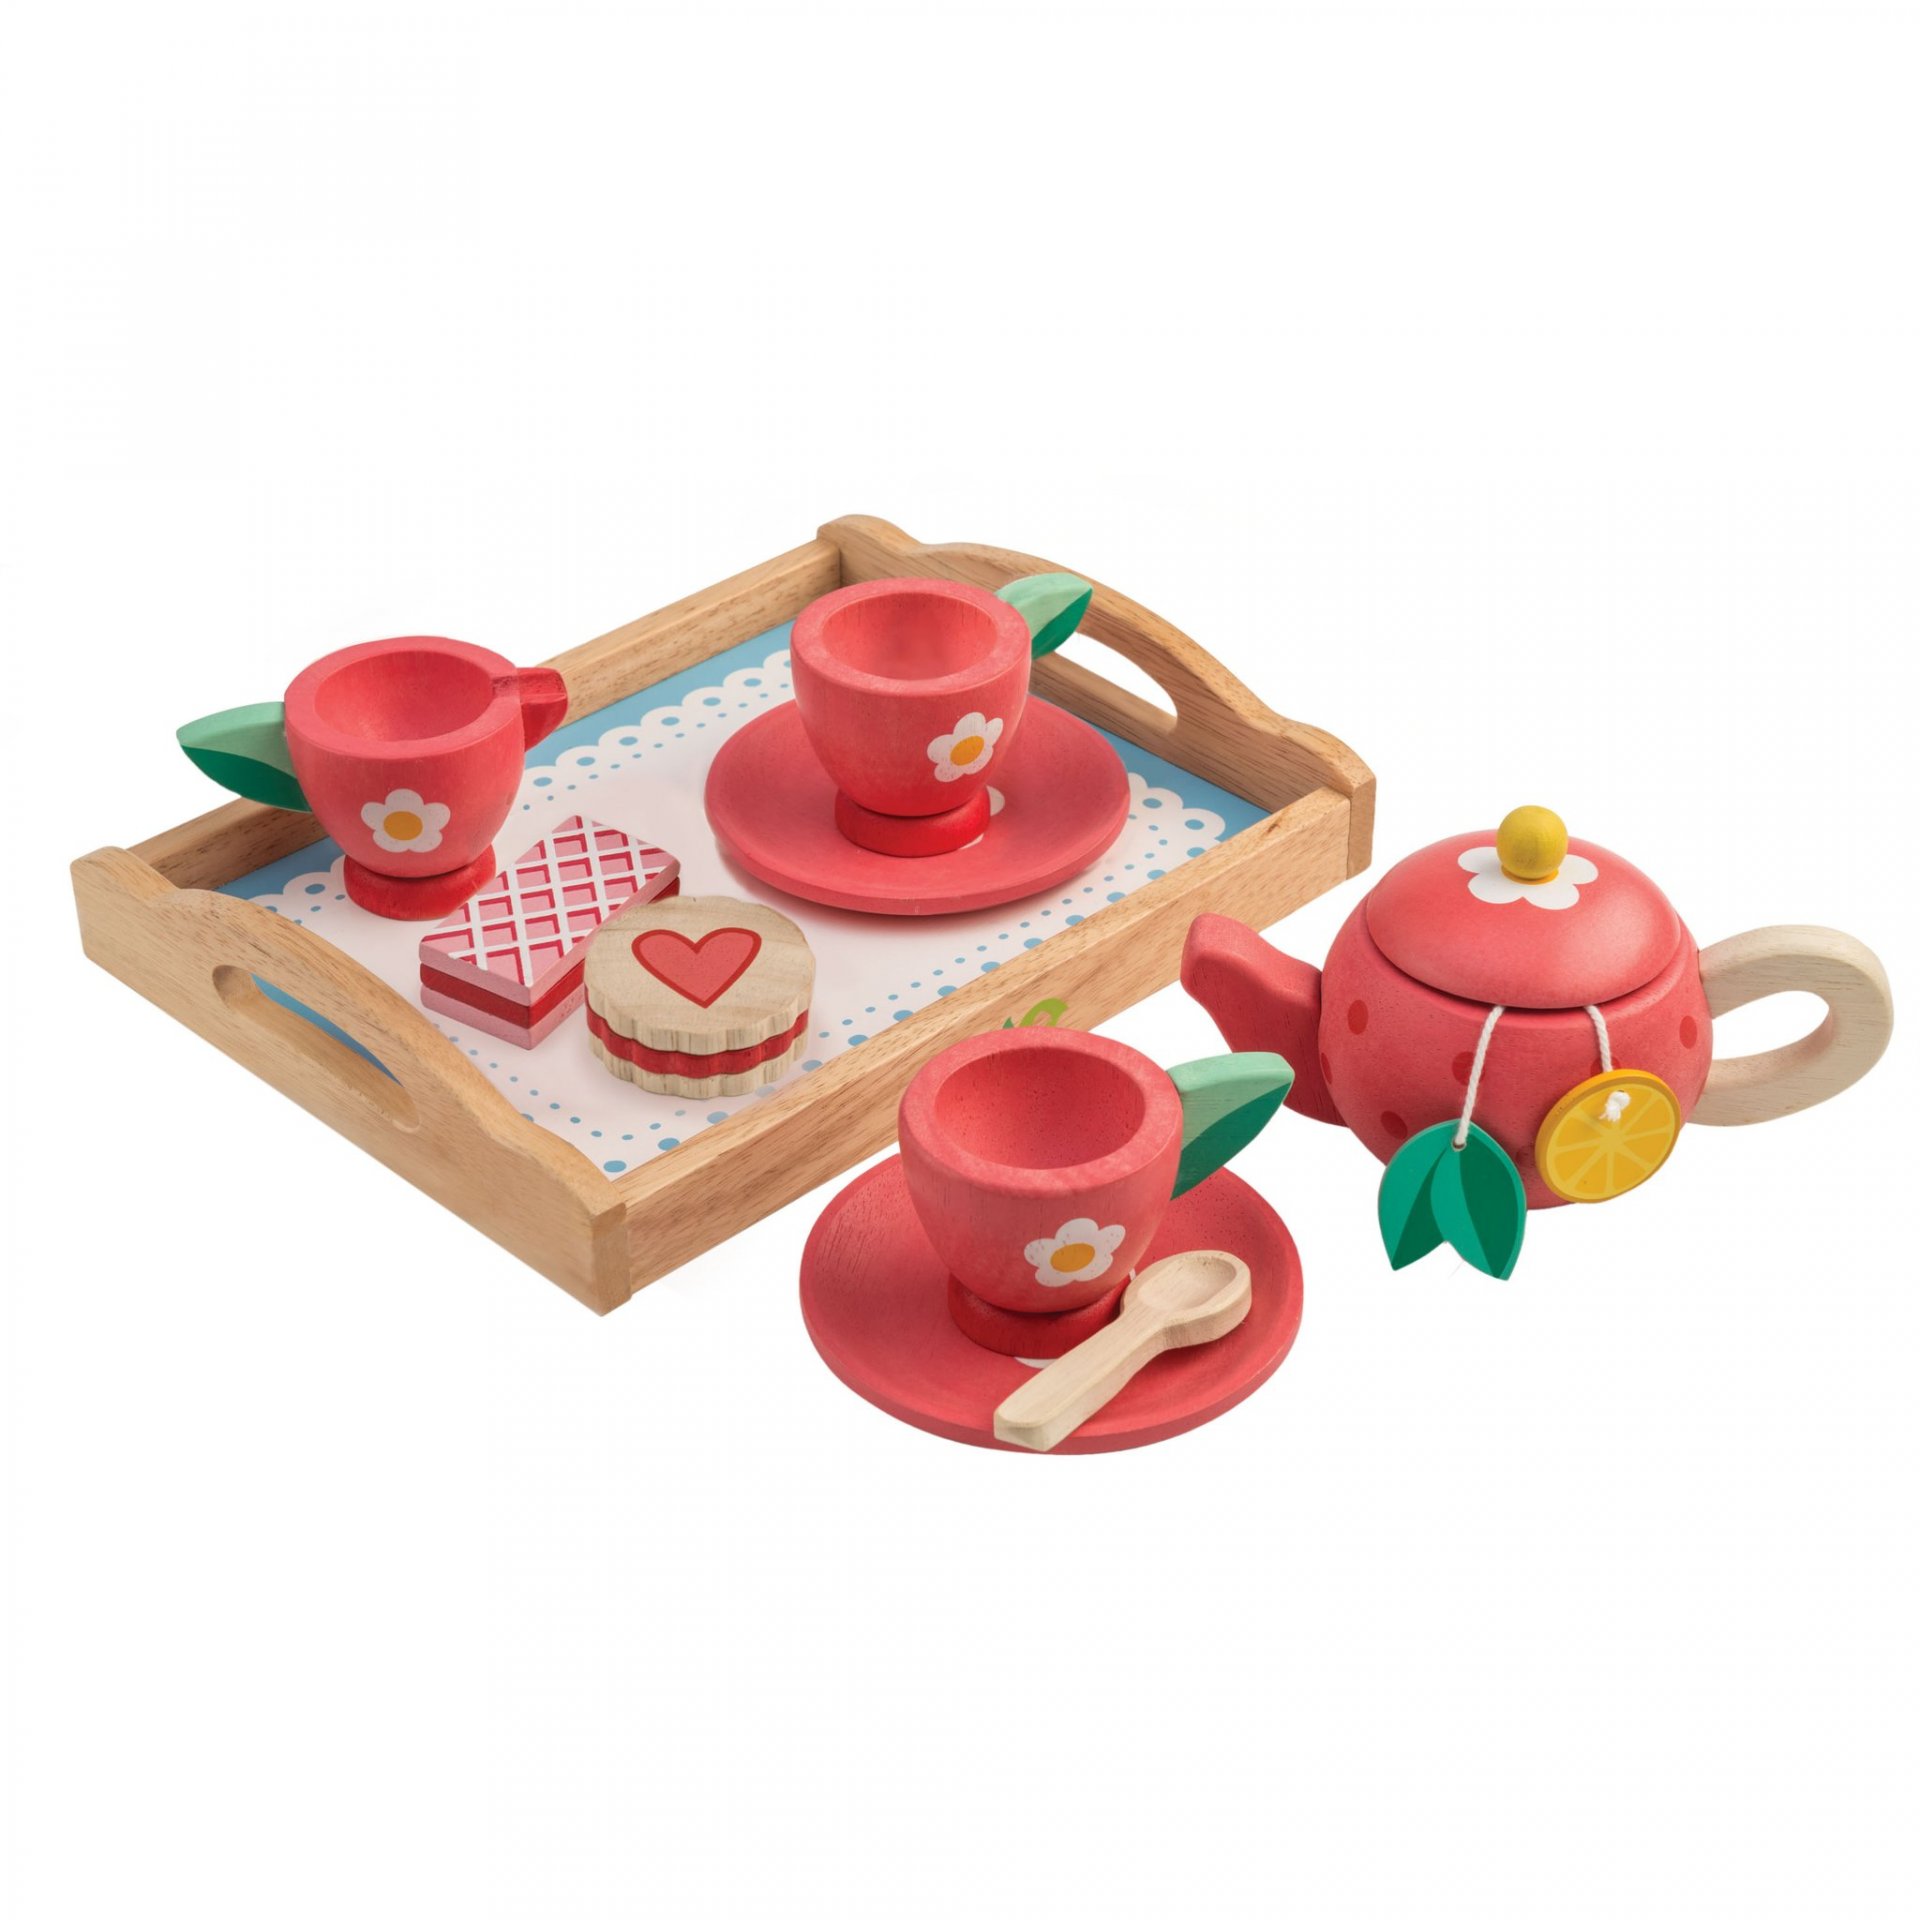 Tea Tray Set - Tender leaf toys